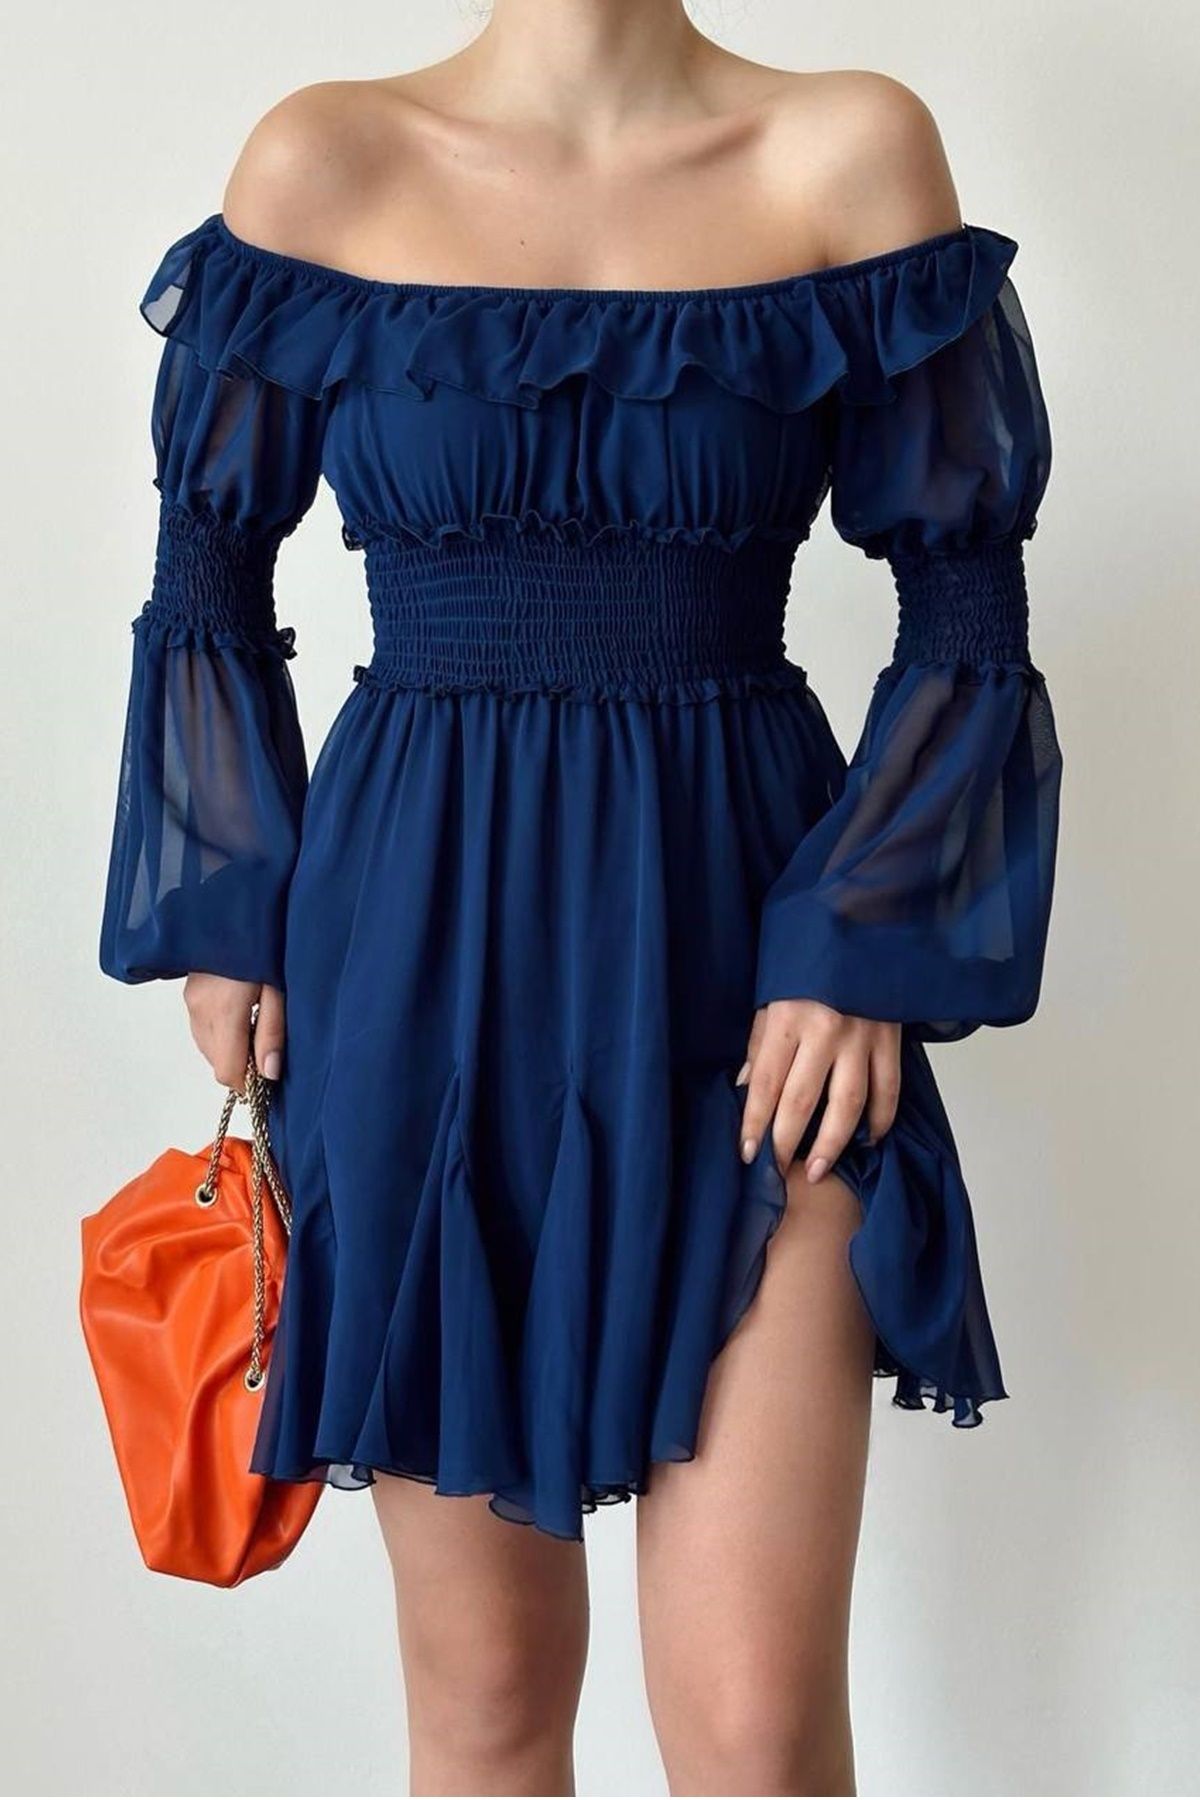 lovebox Kadın Şifon Kumaş Gipe Tasarımlı Straplez Yaka Uzun Kollu Mini Lacivert Abiye Elbise 080